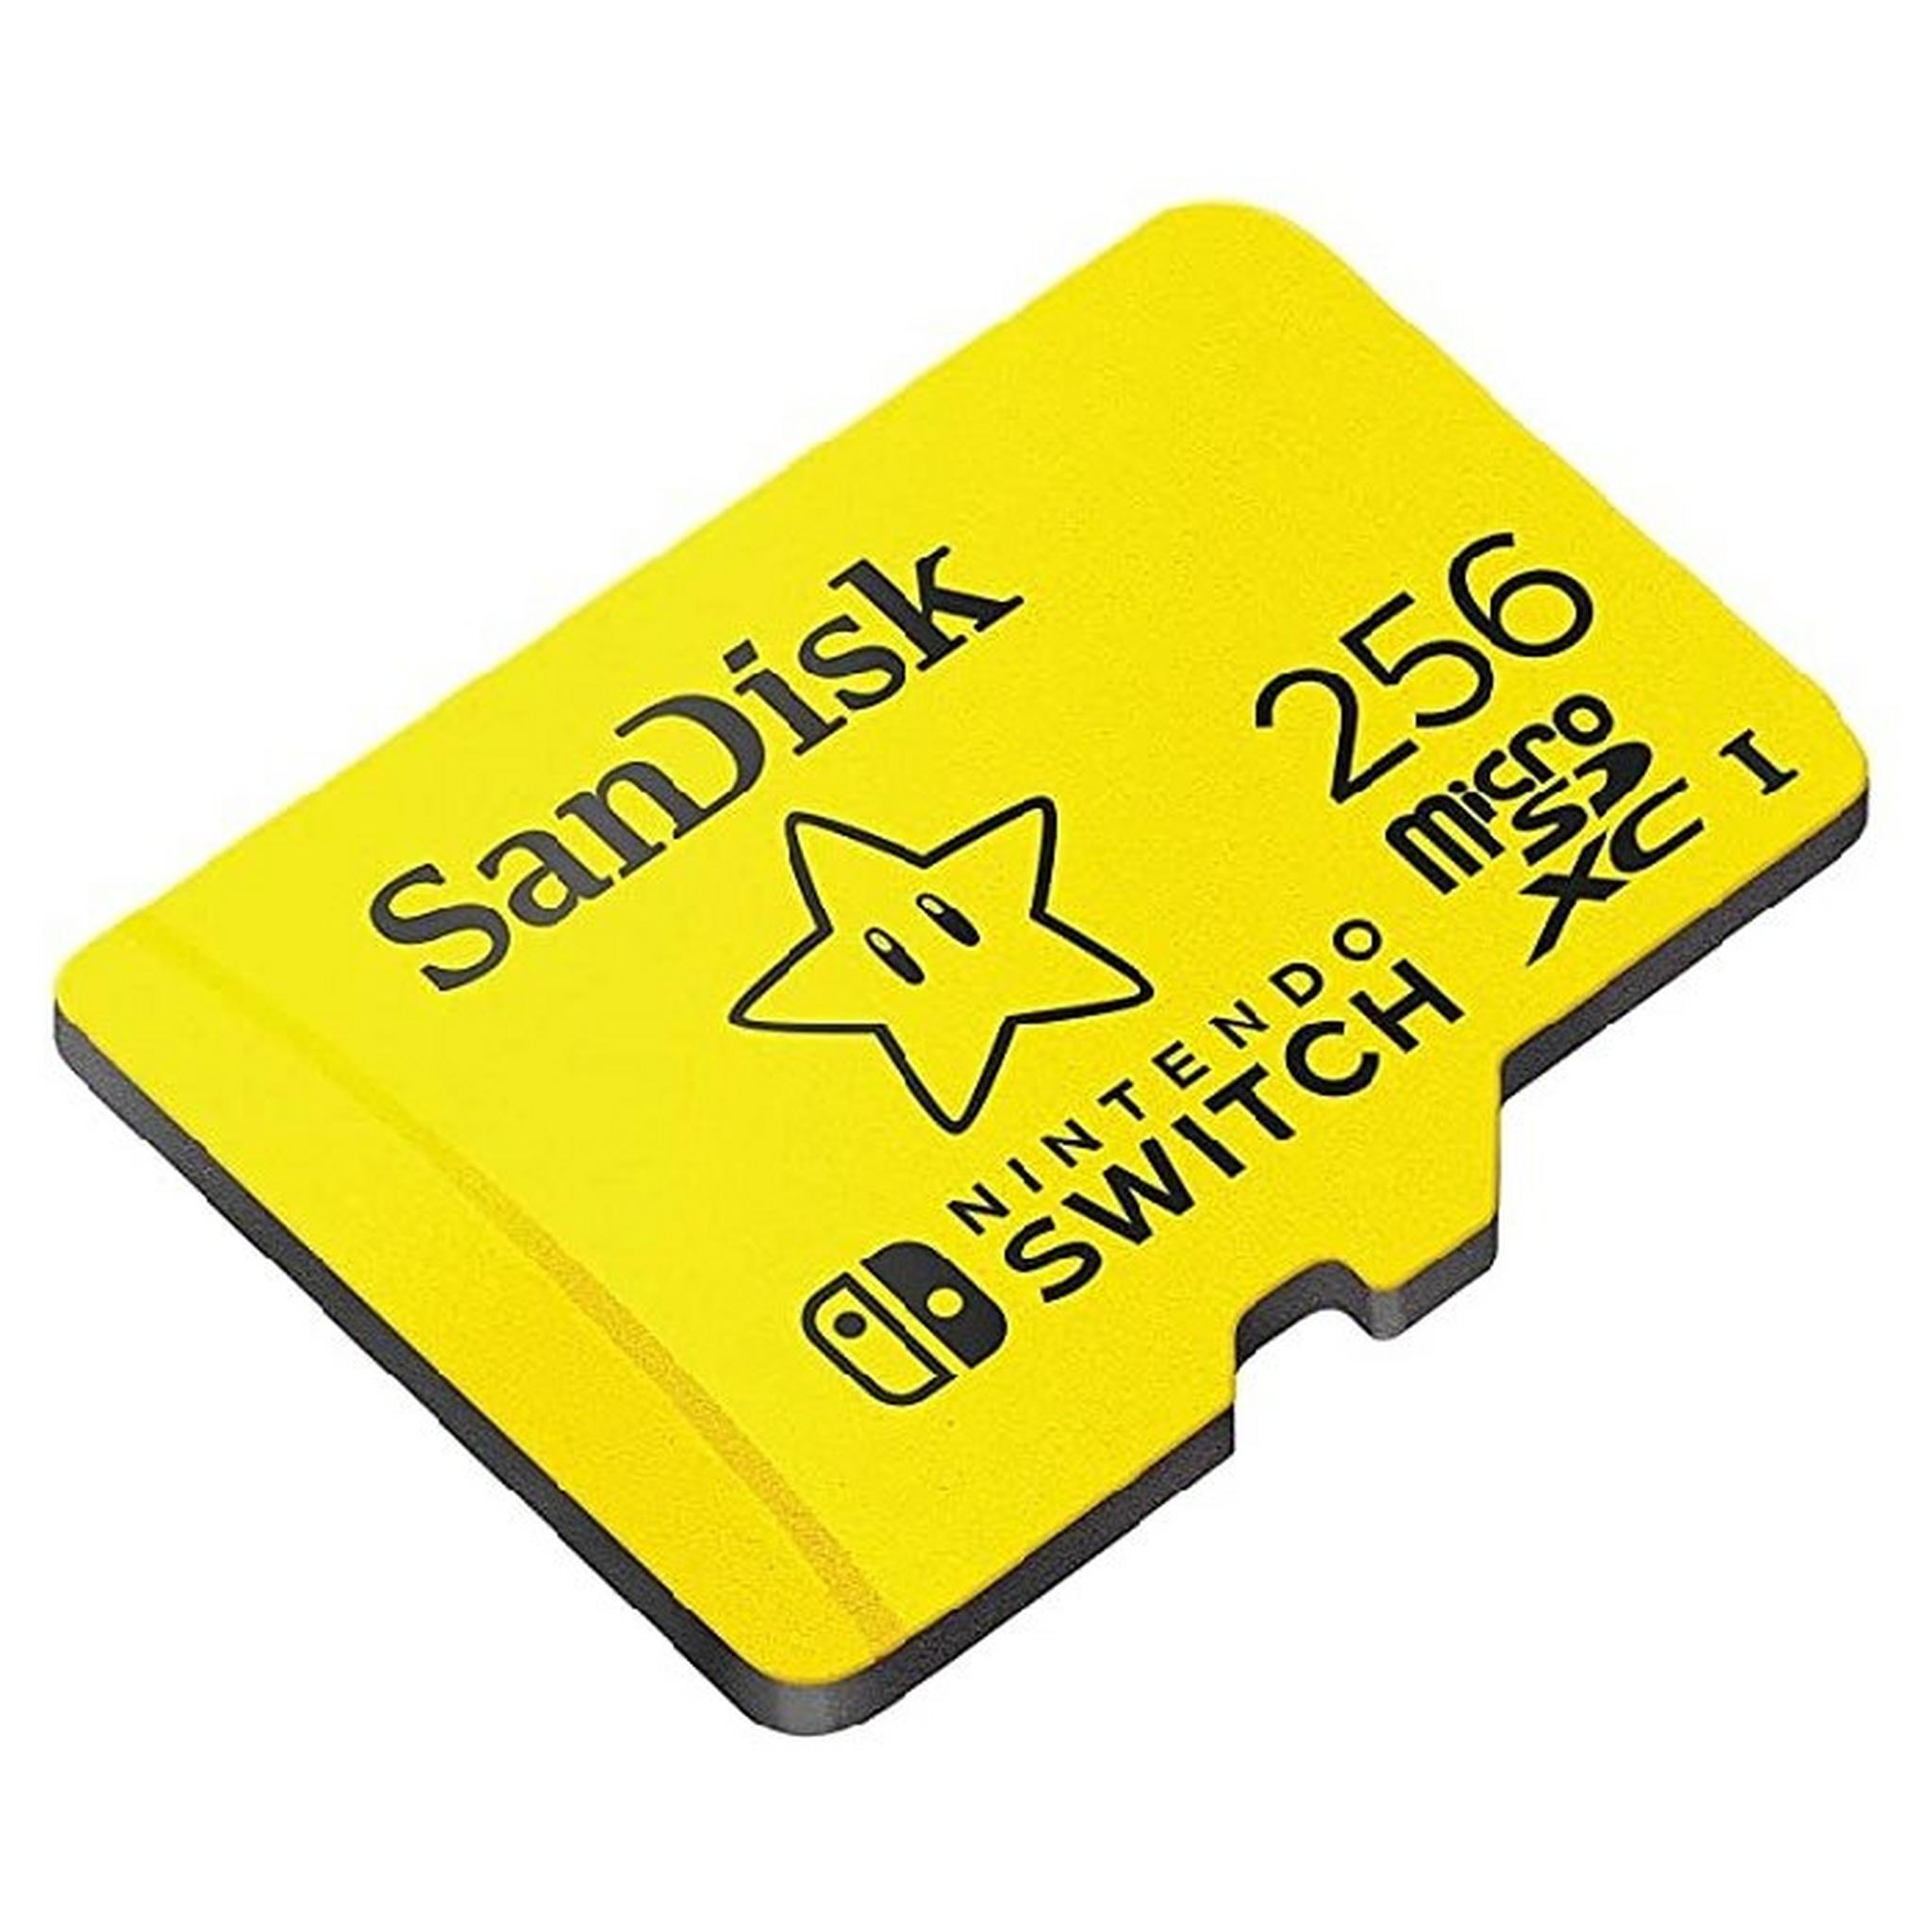 بطاقة ذاكرة UHS-I ميكرو SDXC بسعة 128 جيجابايت لنينتندو سويتش من سانديسك